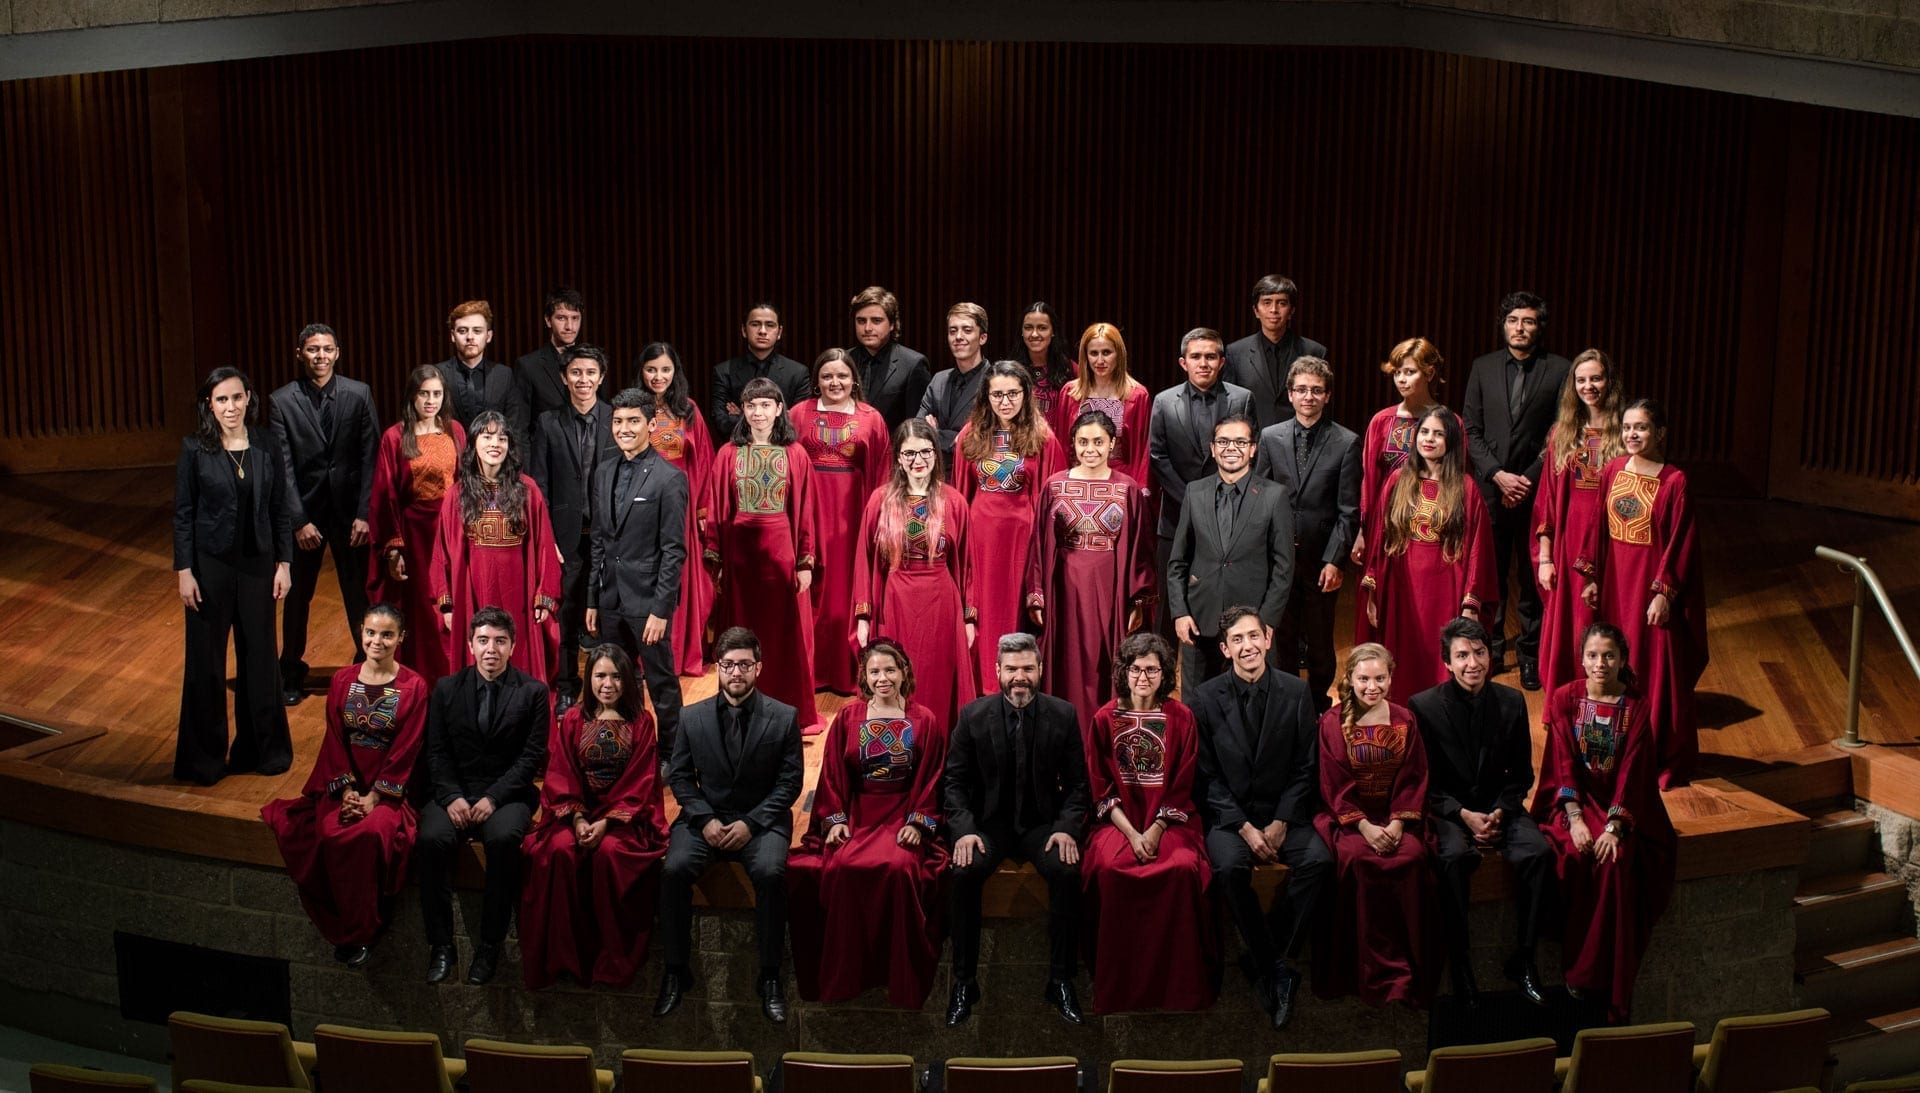 Audiciones para cantar en los coros de la Universidad de los Andes en 2021-2